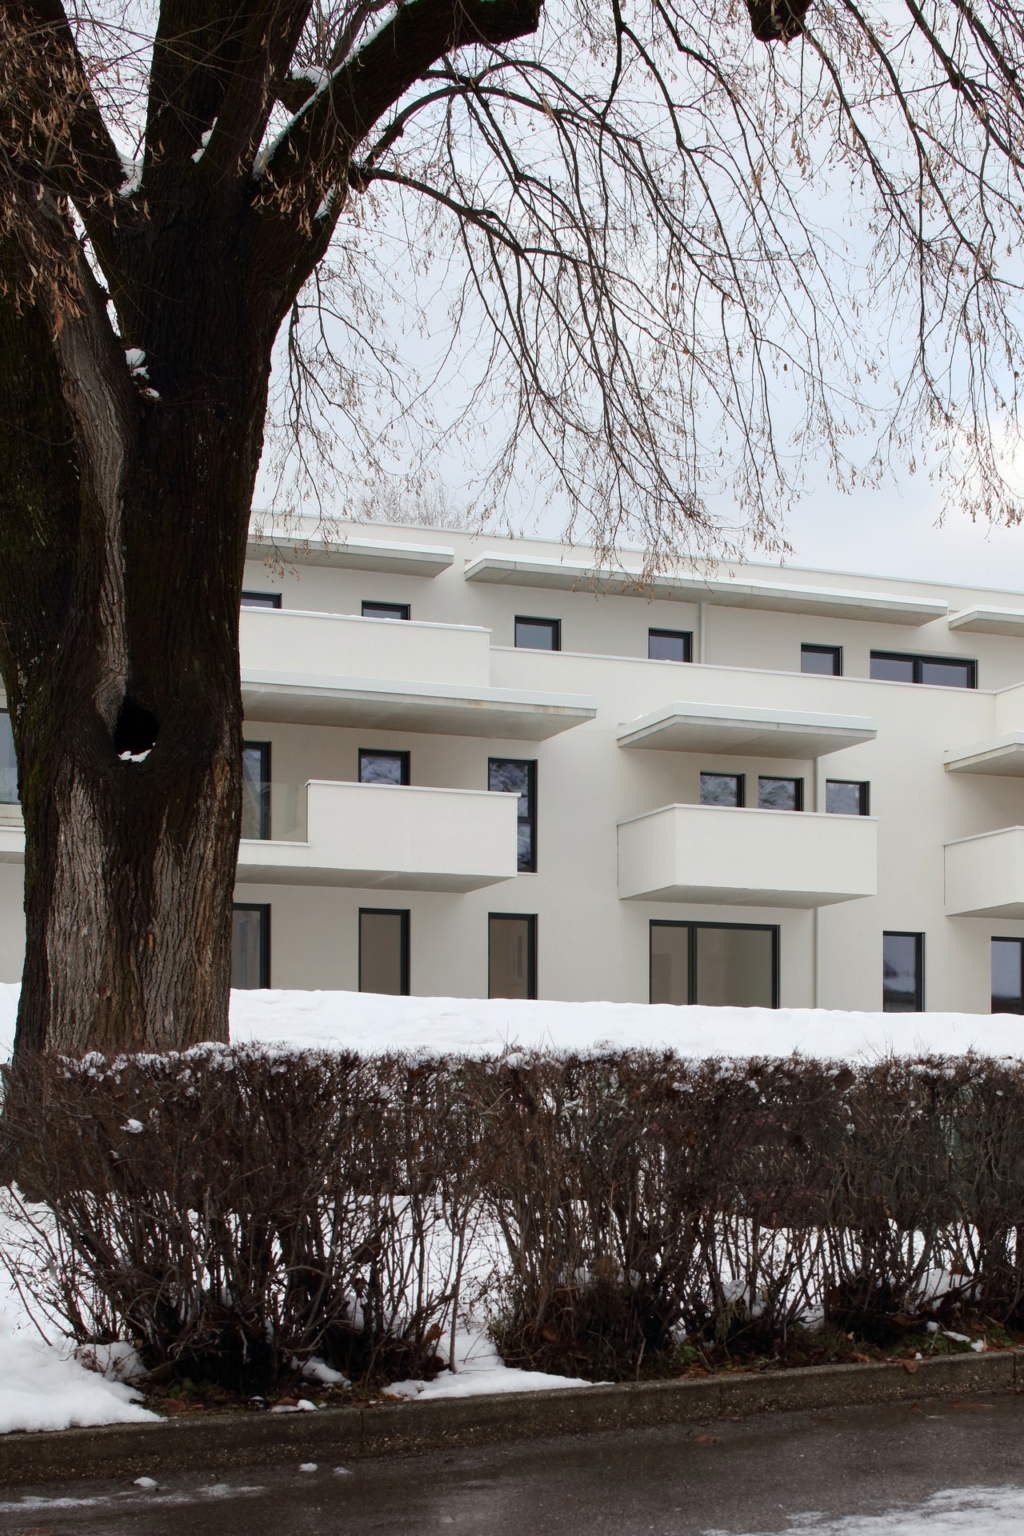 Wohnbau Vassach 2, Villach, Auftraggeber/Bauherr: Bednarzek & Schnitzer Immobilien, Abbildung: Außenfassade, Detailansicht